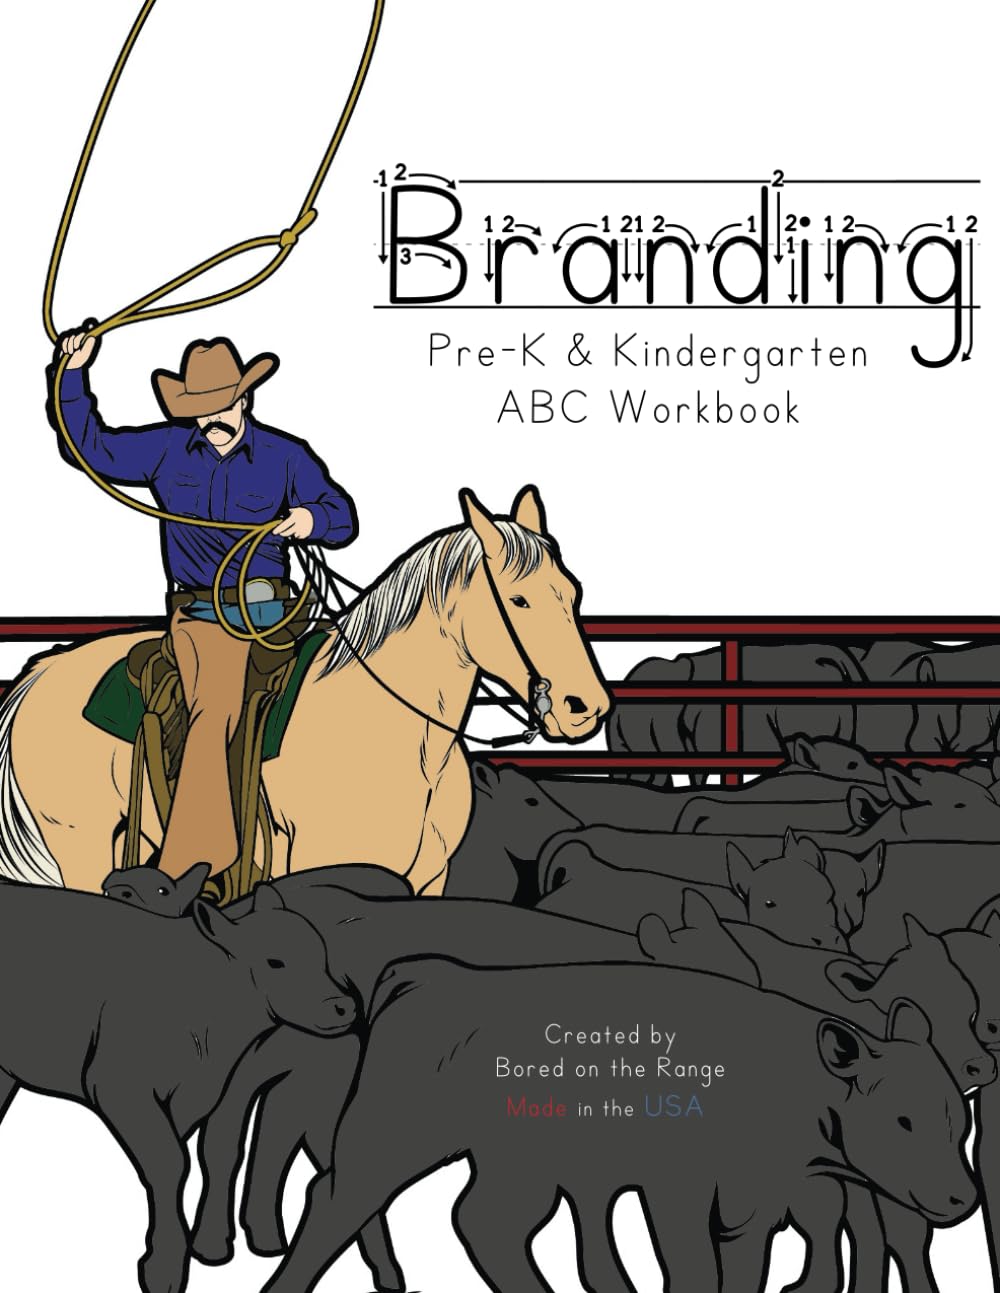 The Branding Pre-K & Kindergarten ABC Workbook